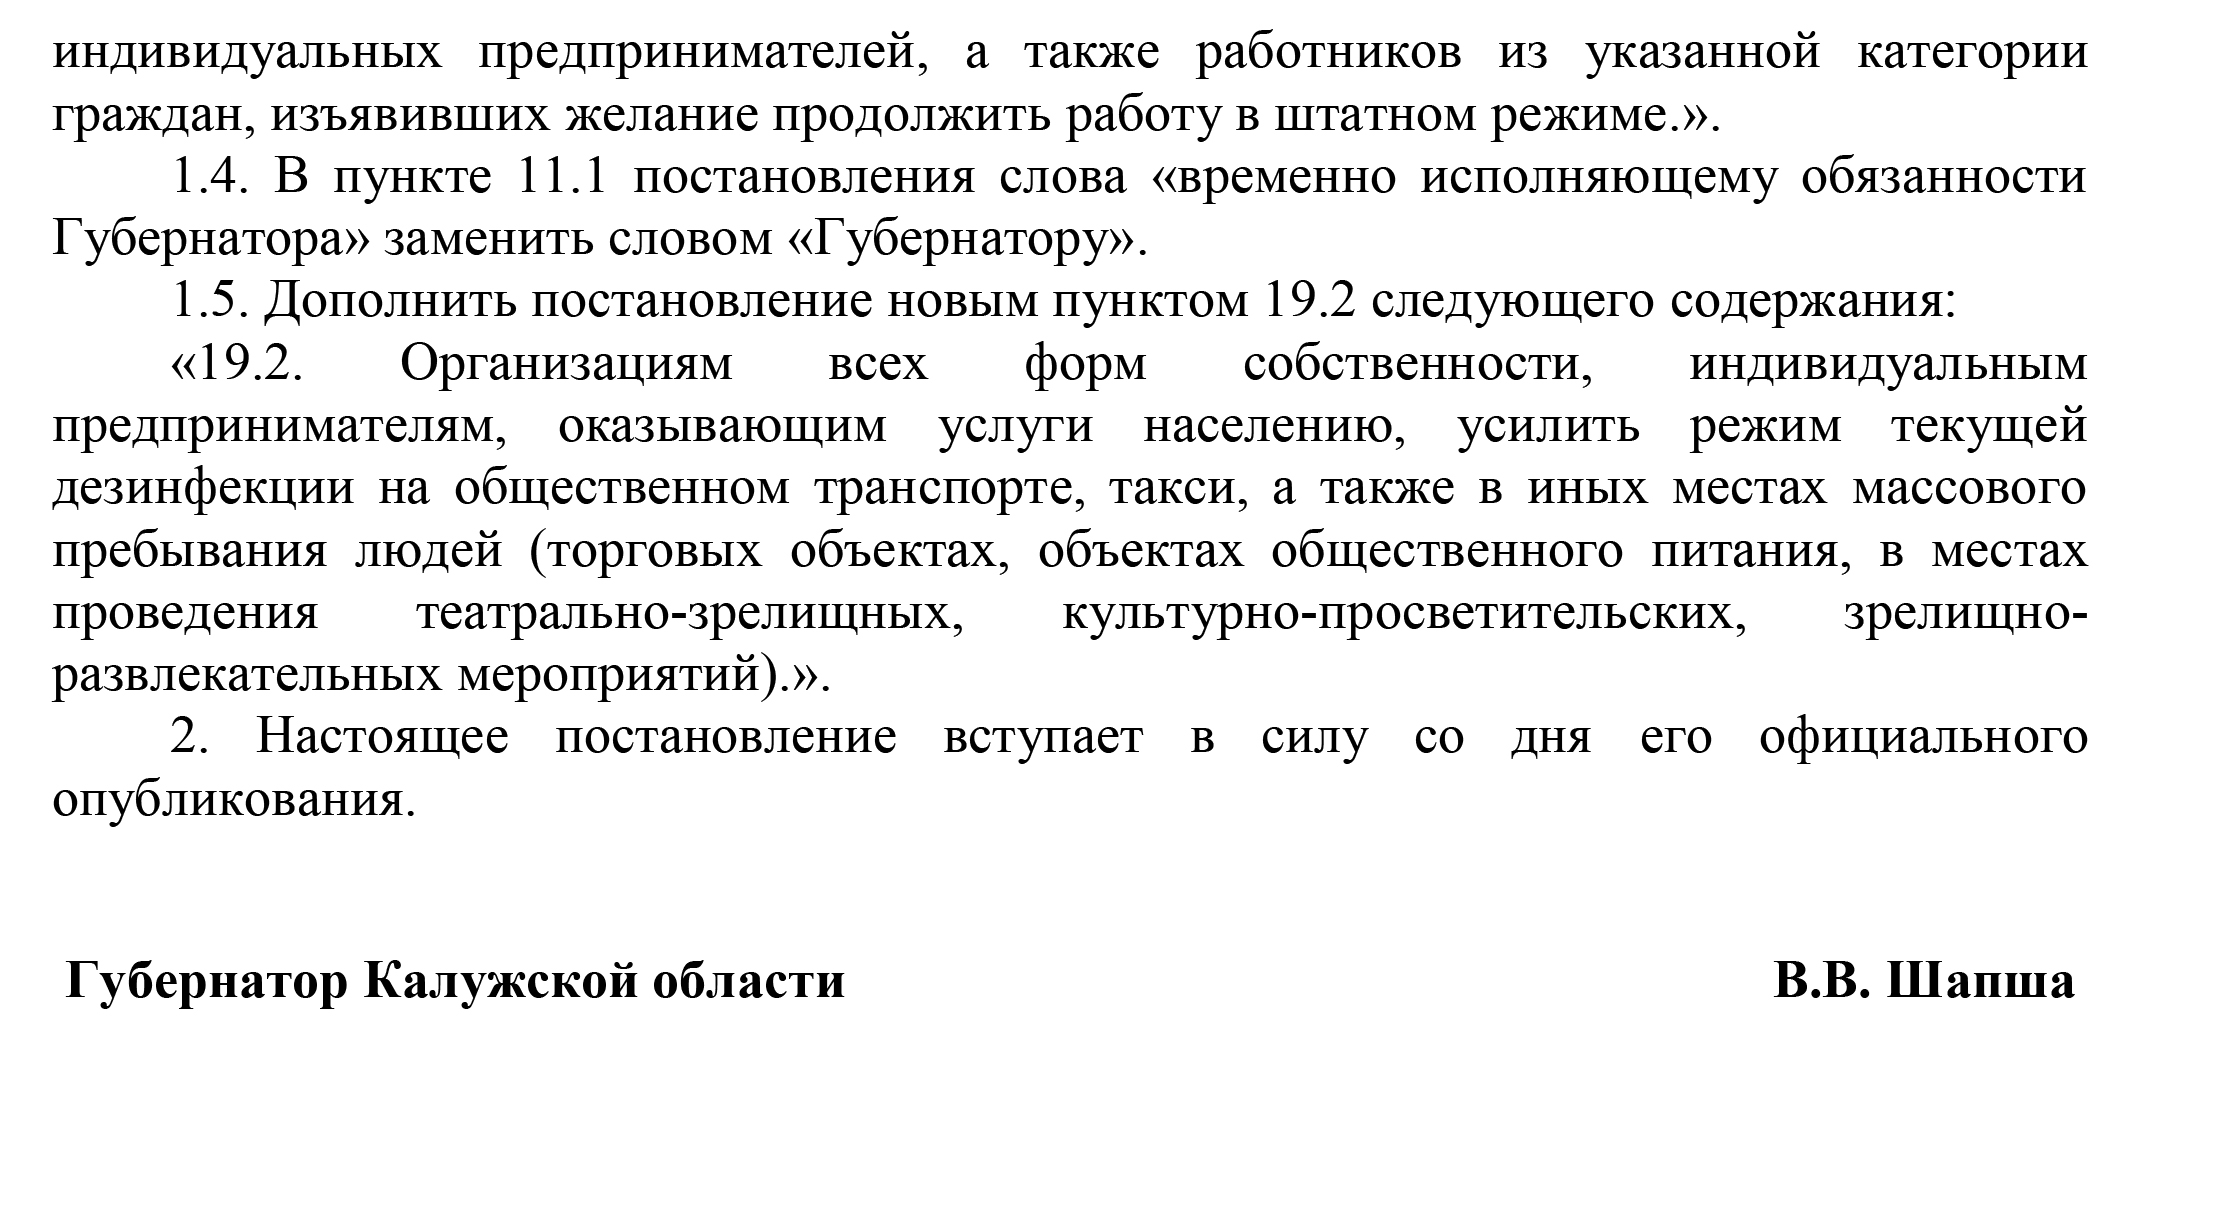 Полный текст постановления правительства Калужской области №830 от 30.10.2020: